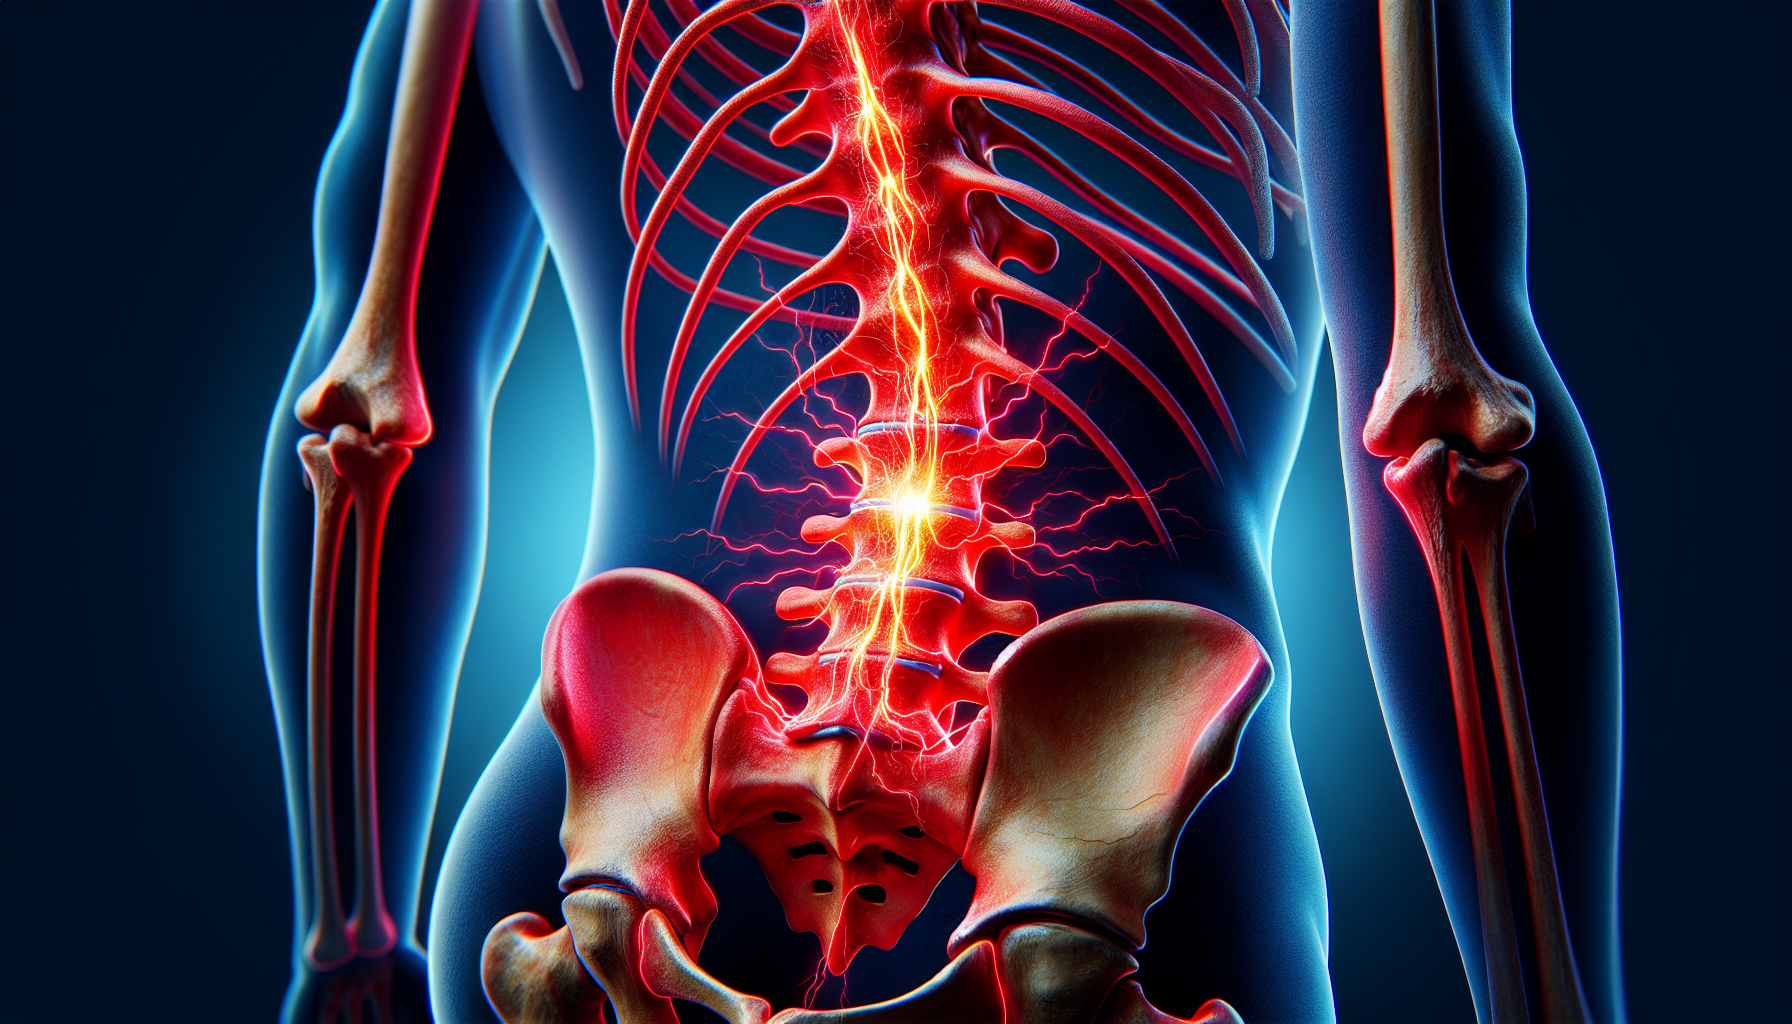 Basivertebral nerve in chronic low back pain